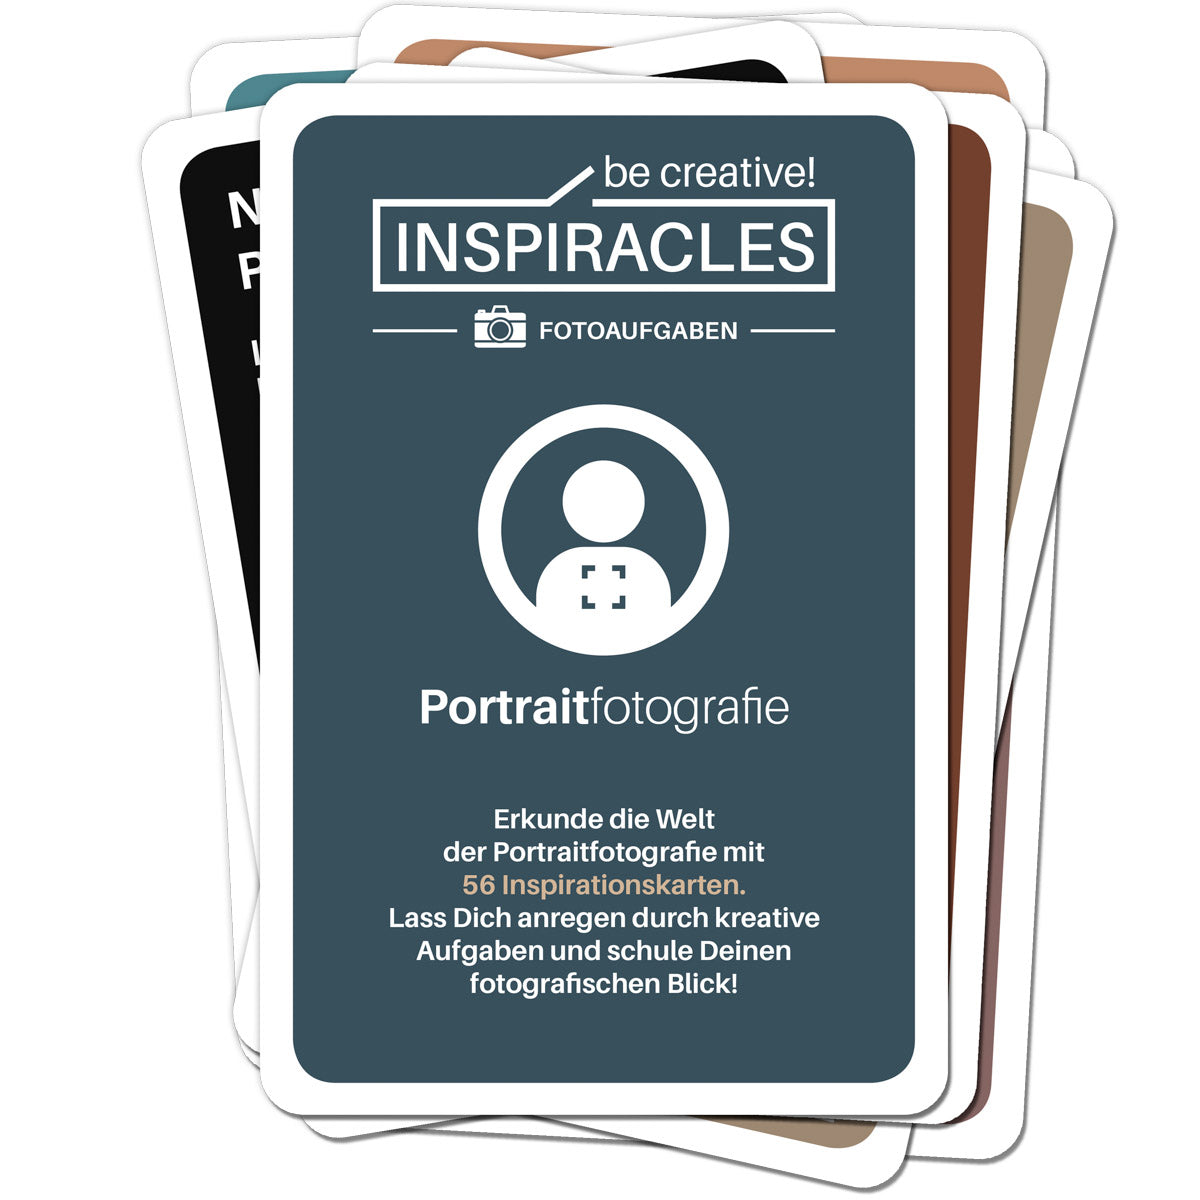 Inspiracles Fotoaufgaben Portrait Edition